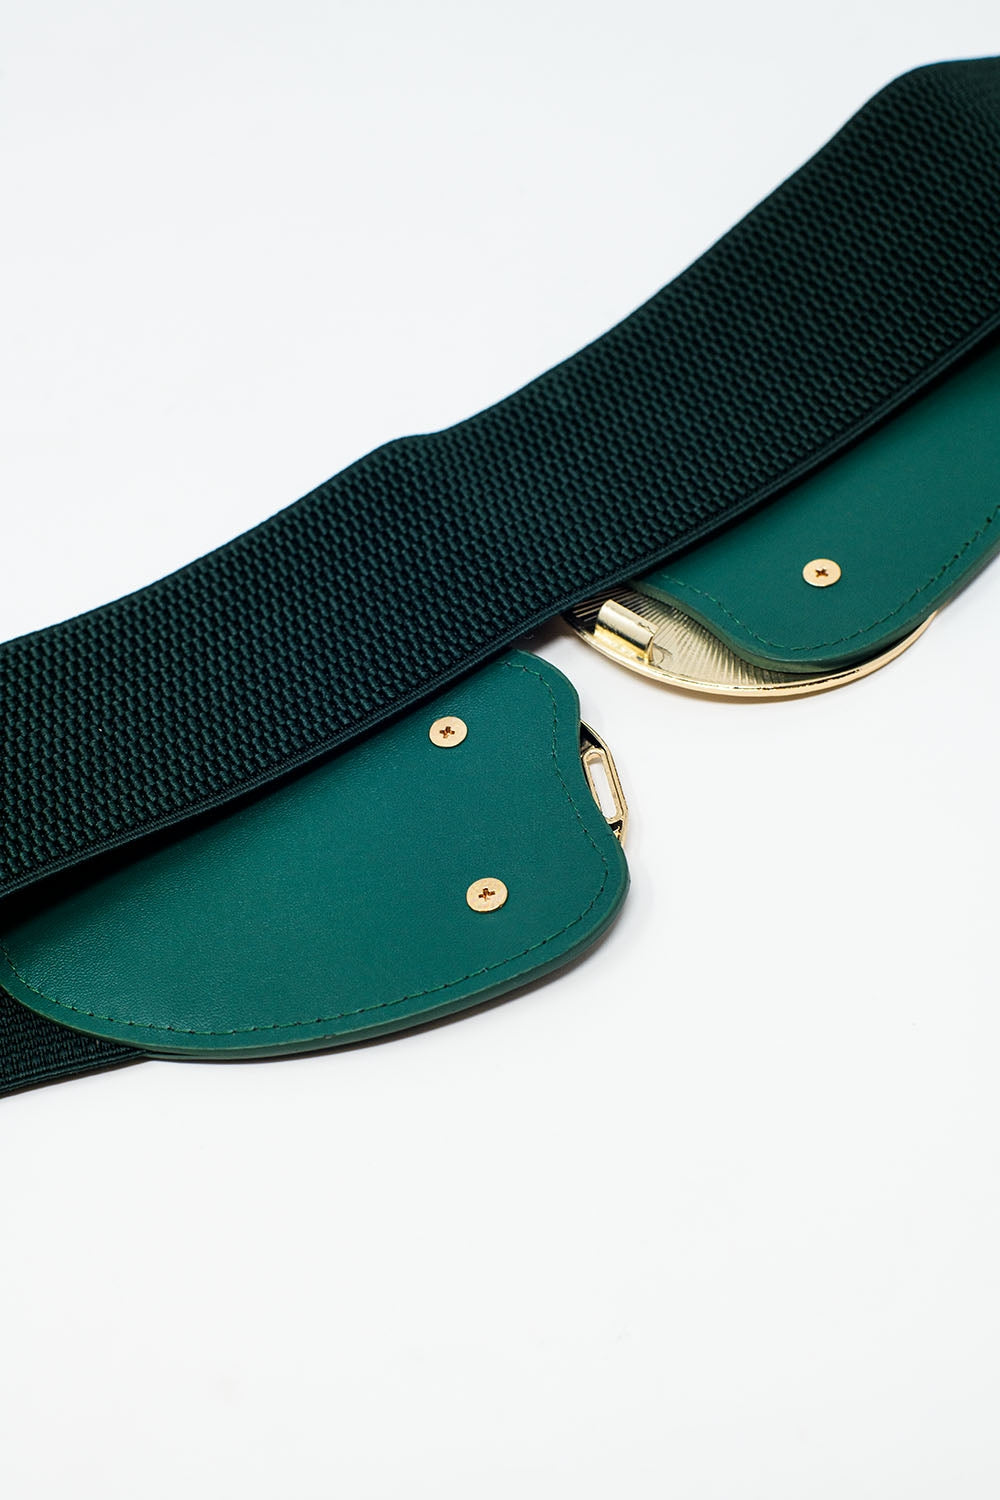 Cintura elastica verde con doppia fibbia in metallo